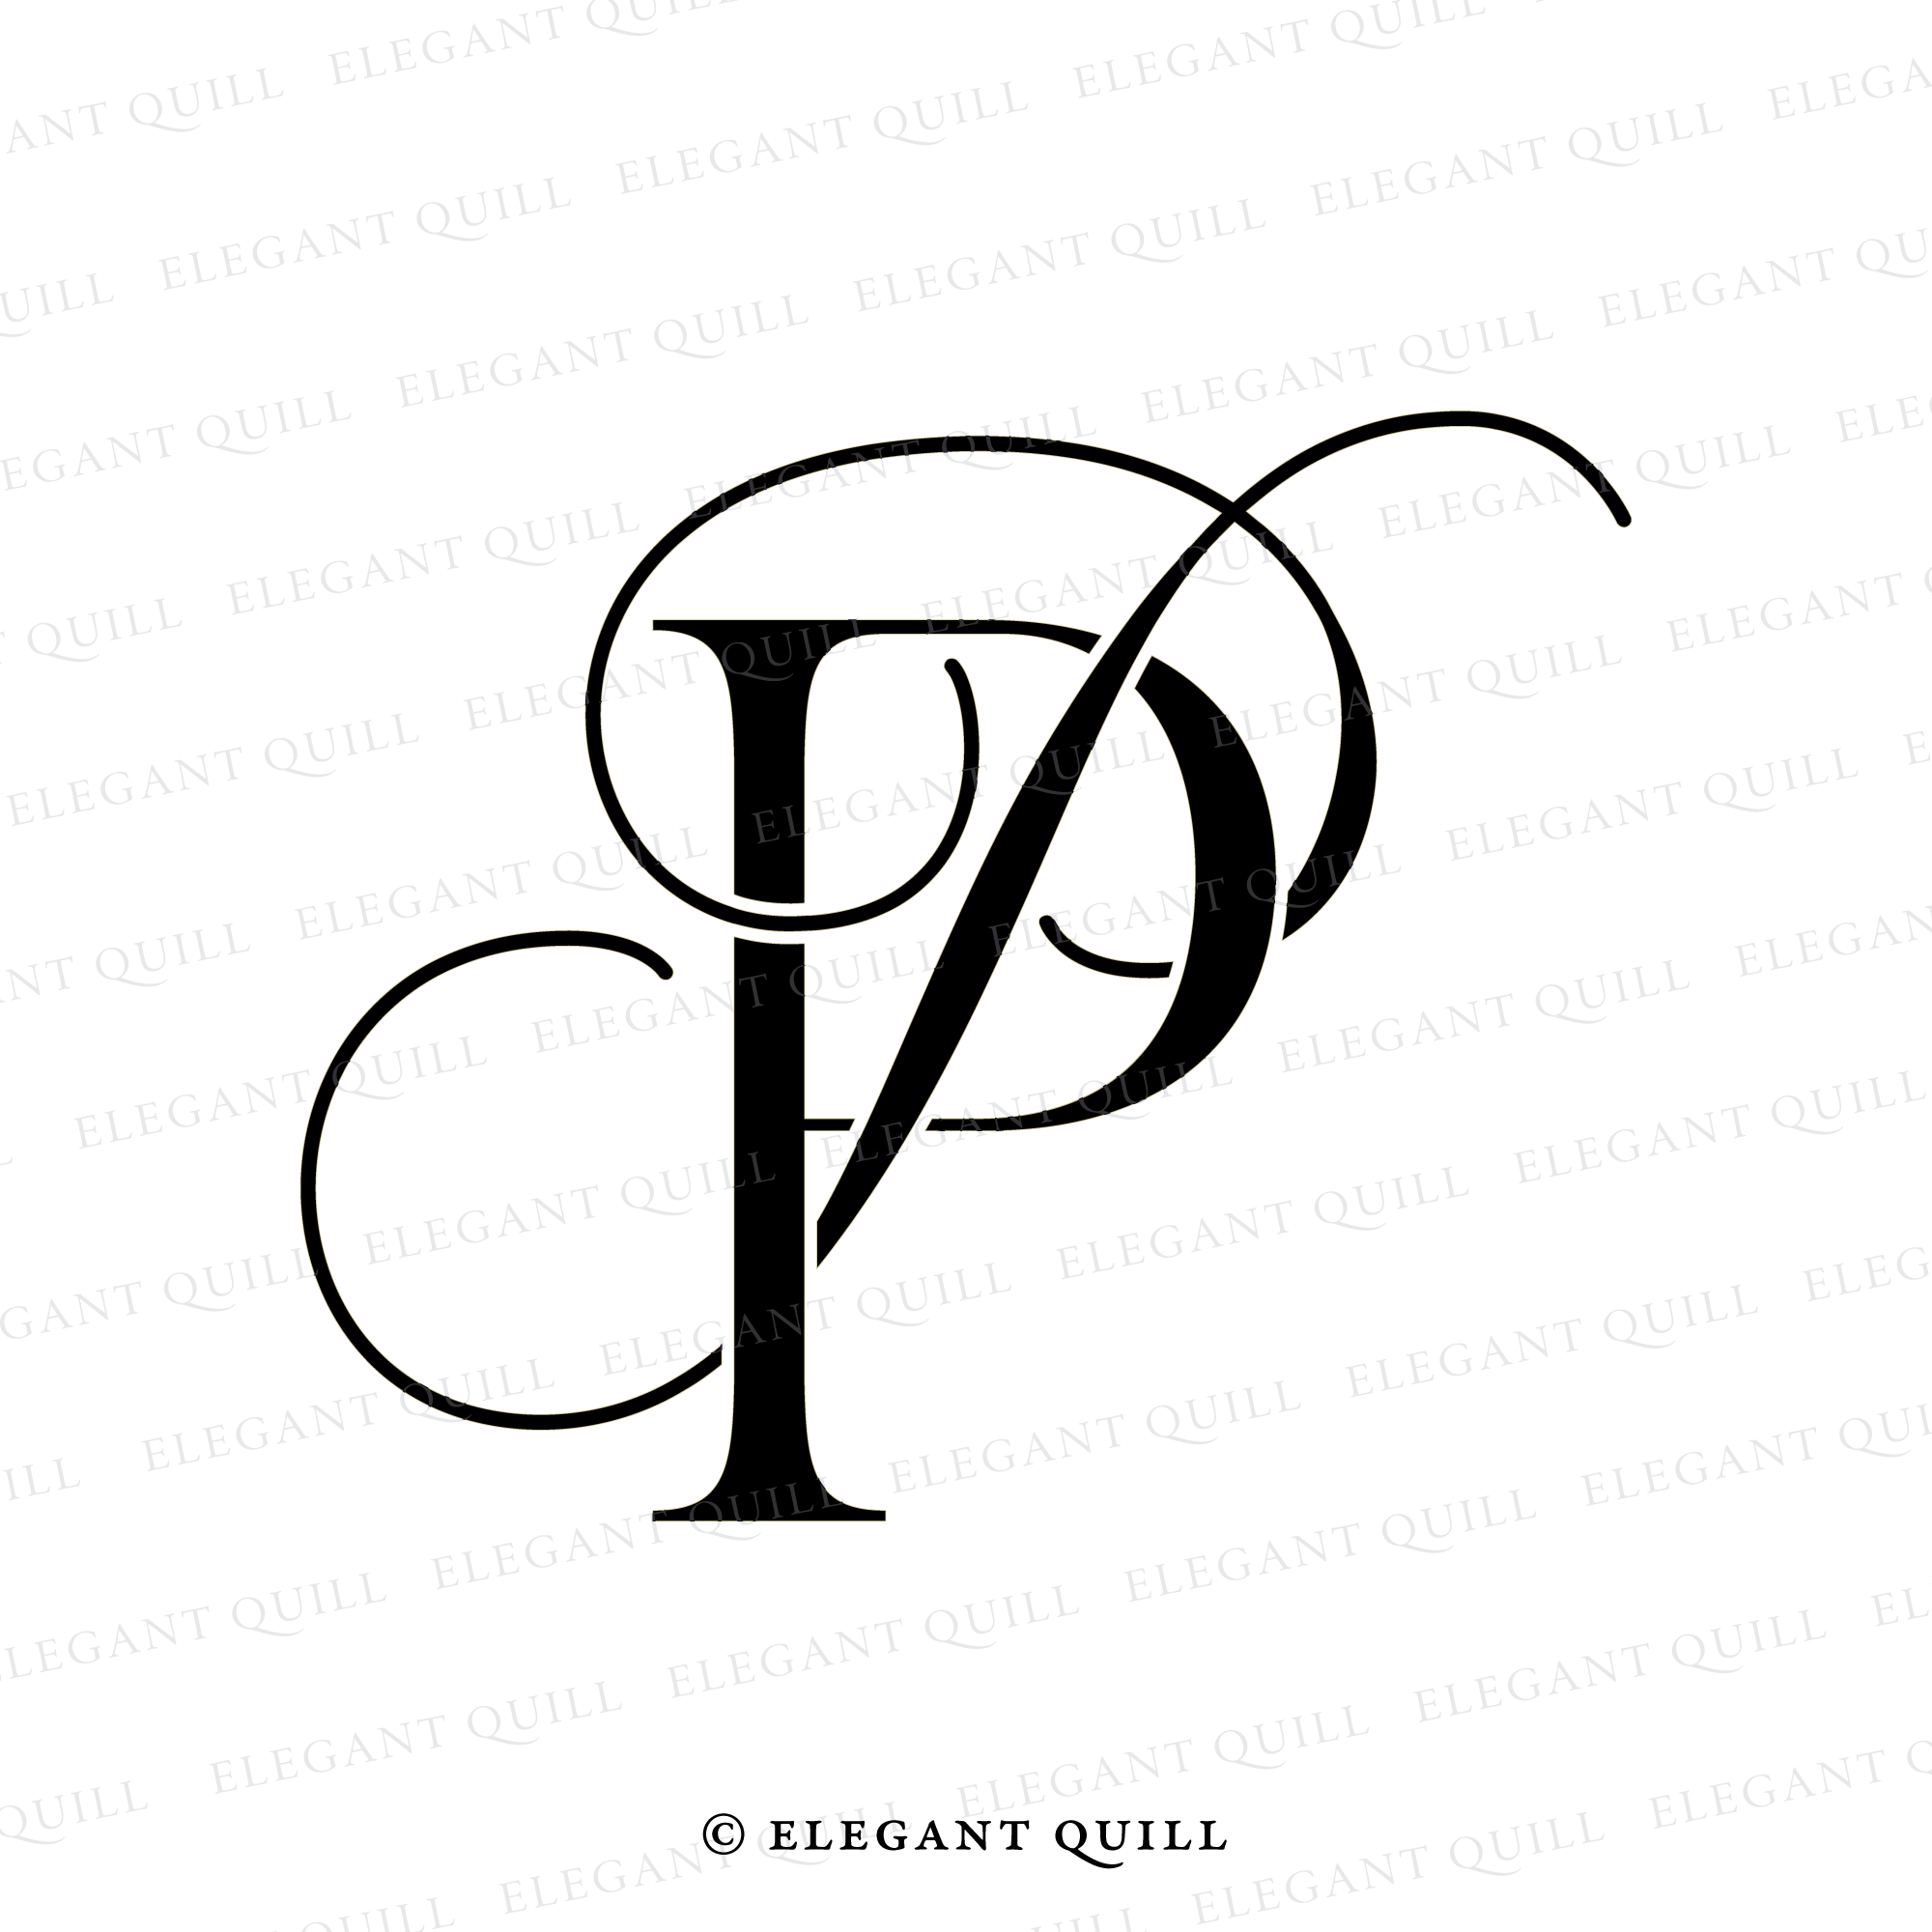 pp logo design